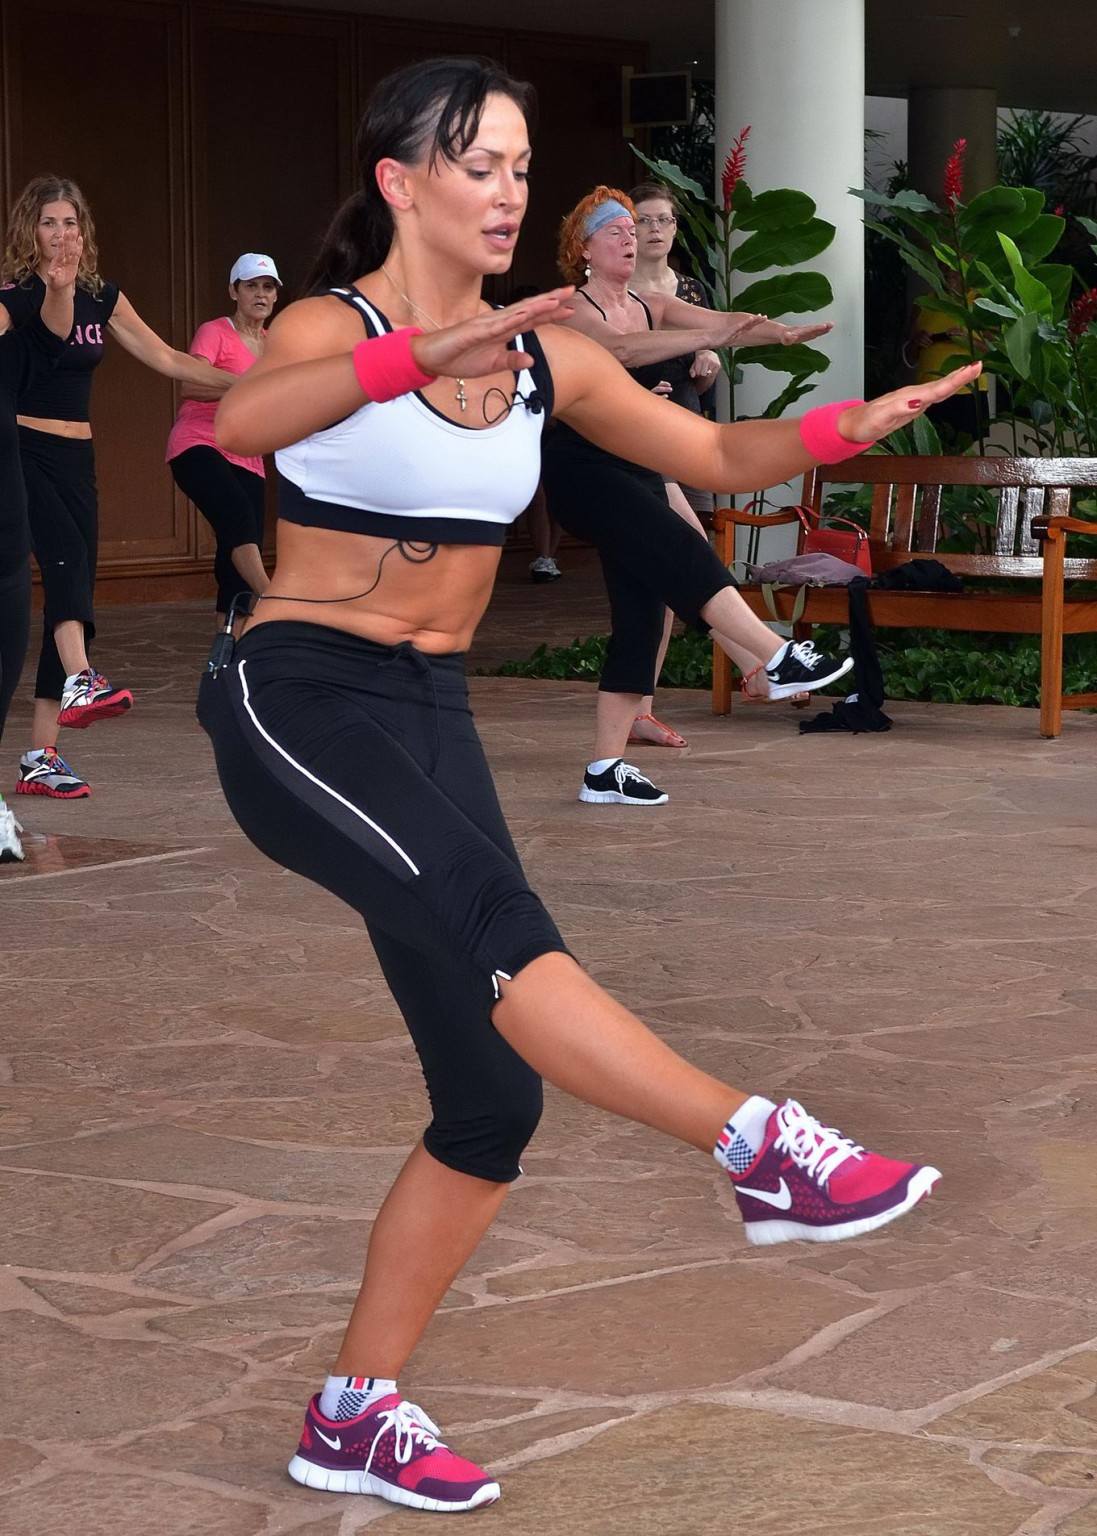 Karina smirnoff si allena indossando collant con reggiseno sportivo alle hawaii
 #75275098